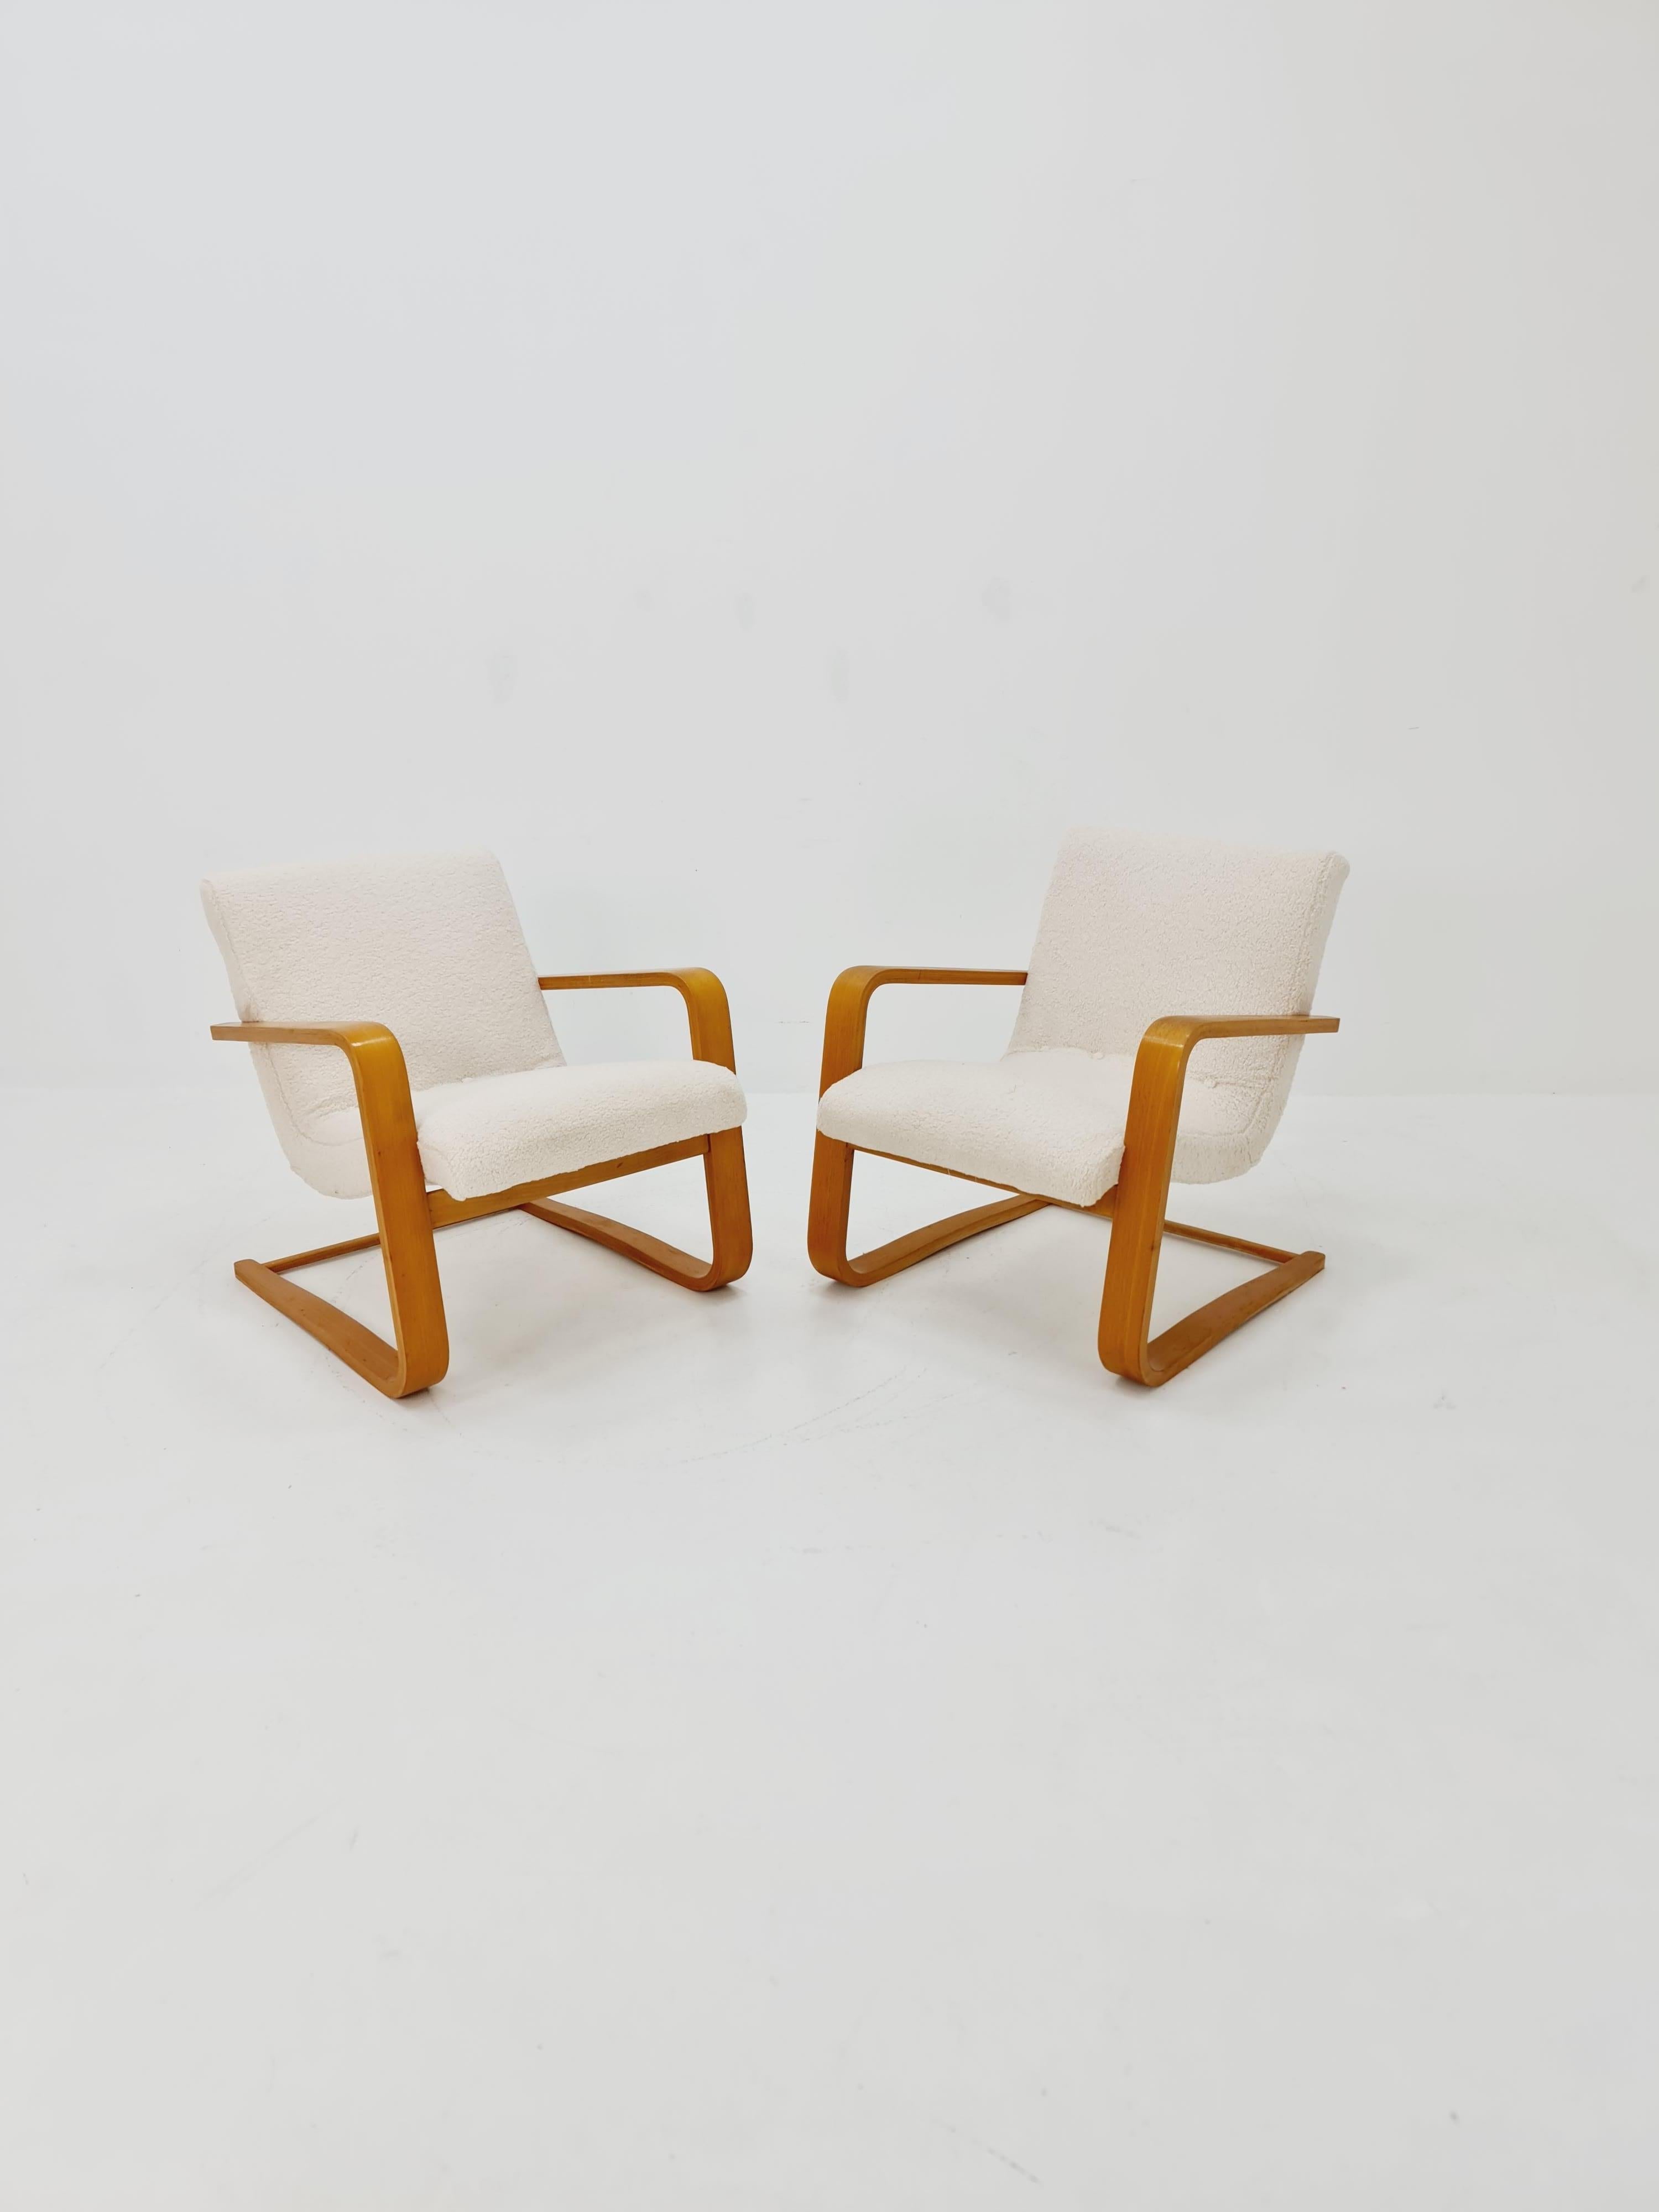 Mitte des Jahrhunderts Paar deutsche Lounge-Sessel, Bugholz  1960s

Preis gilt für ein Paar

Design-Jahr: 1960s 


Es ist in sehr gutem Zustand. Doch wie bei allen Vintage-Artikeln sollten einige kleinere Gebrauchsspuren erwartet werden. 
gepolstert